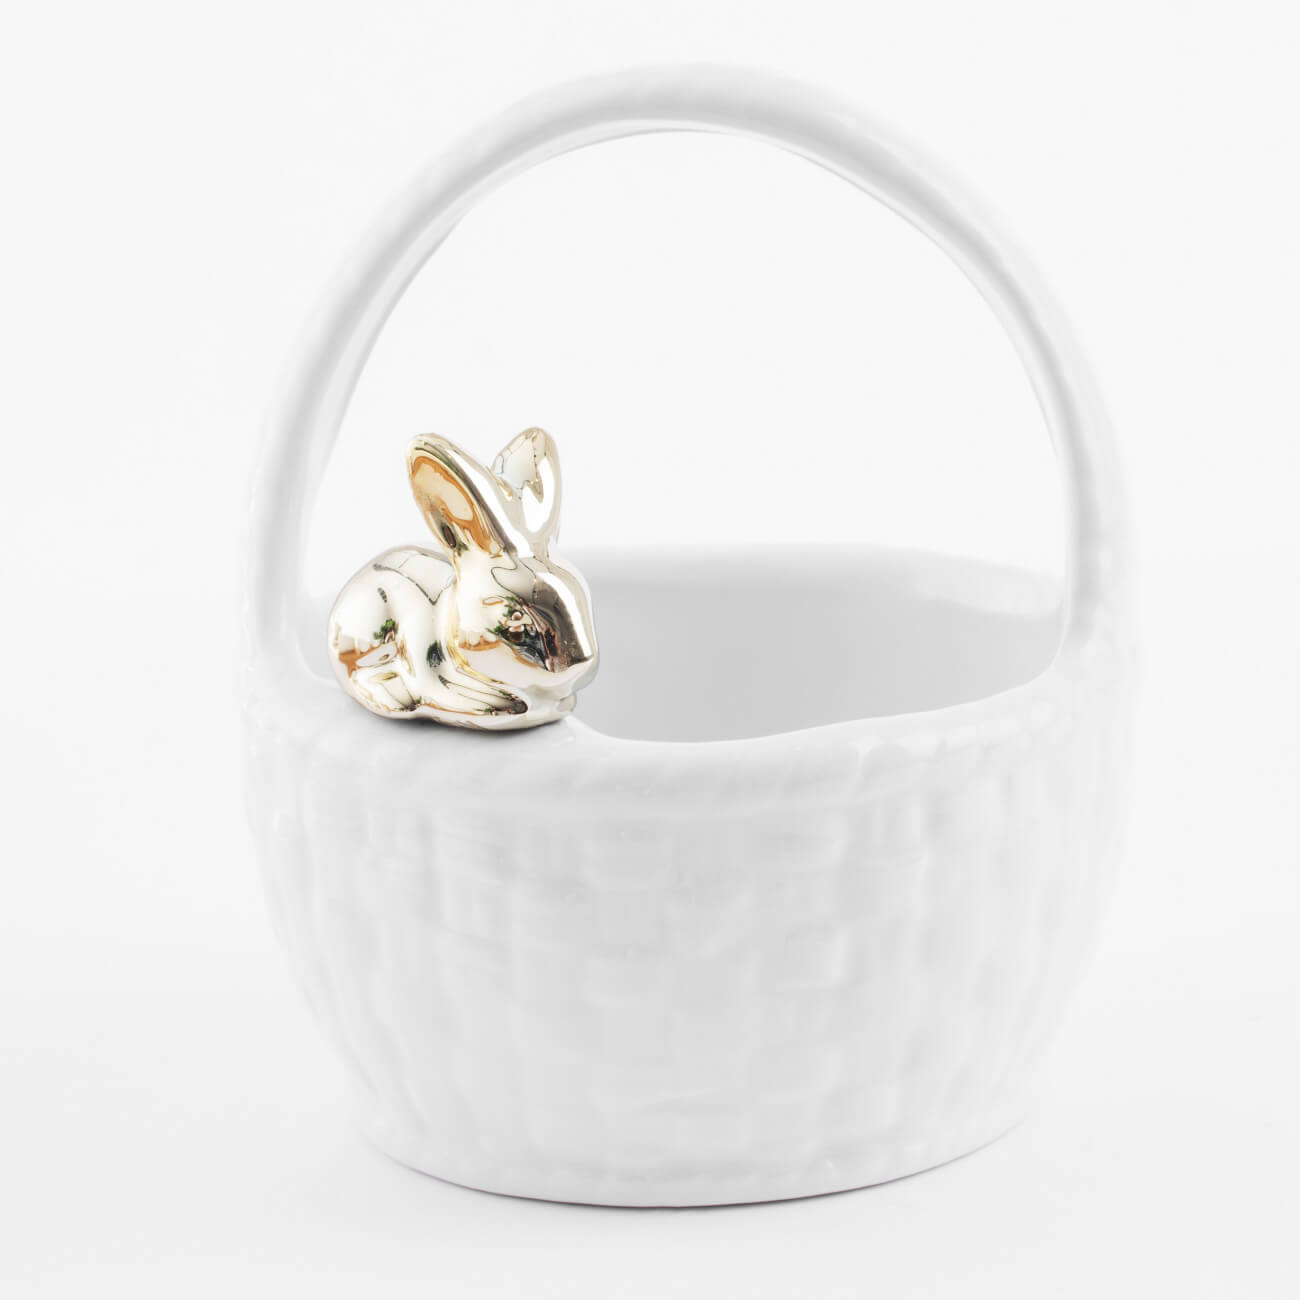 Конфетница, 12х14 см, с ручкой, керамика, белая, Кролик на корзине, Easter gold